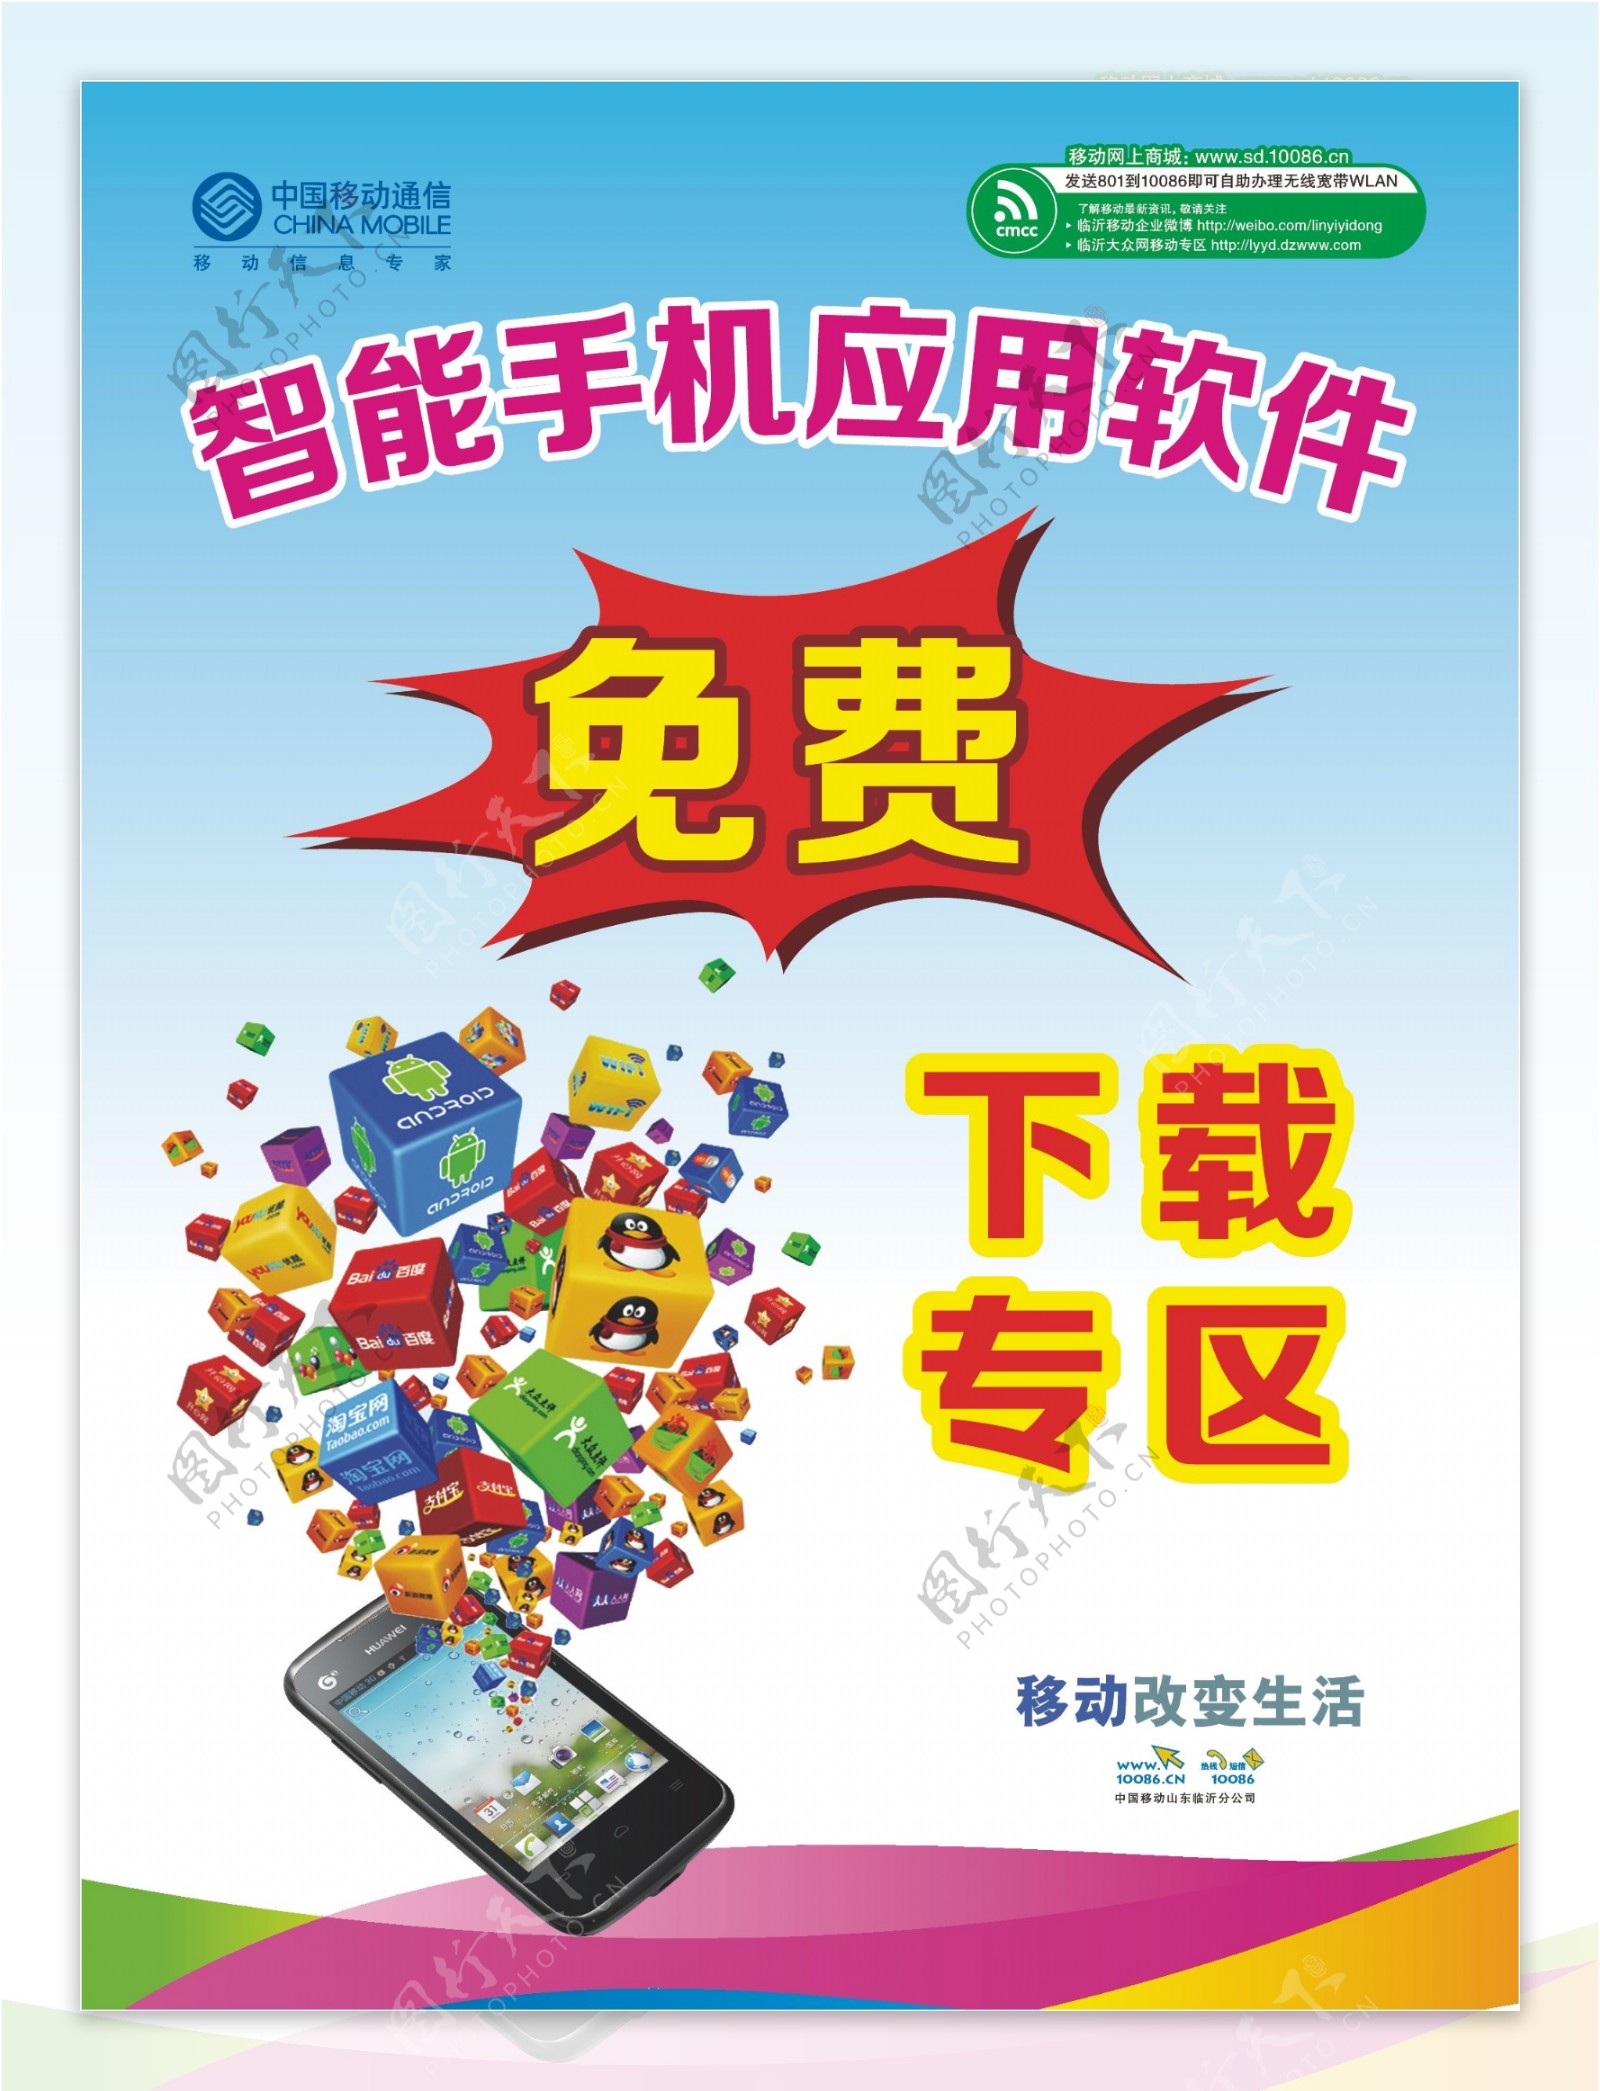 中国移动智能手机下载专区图片